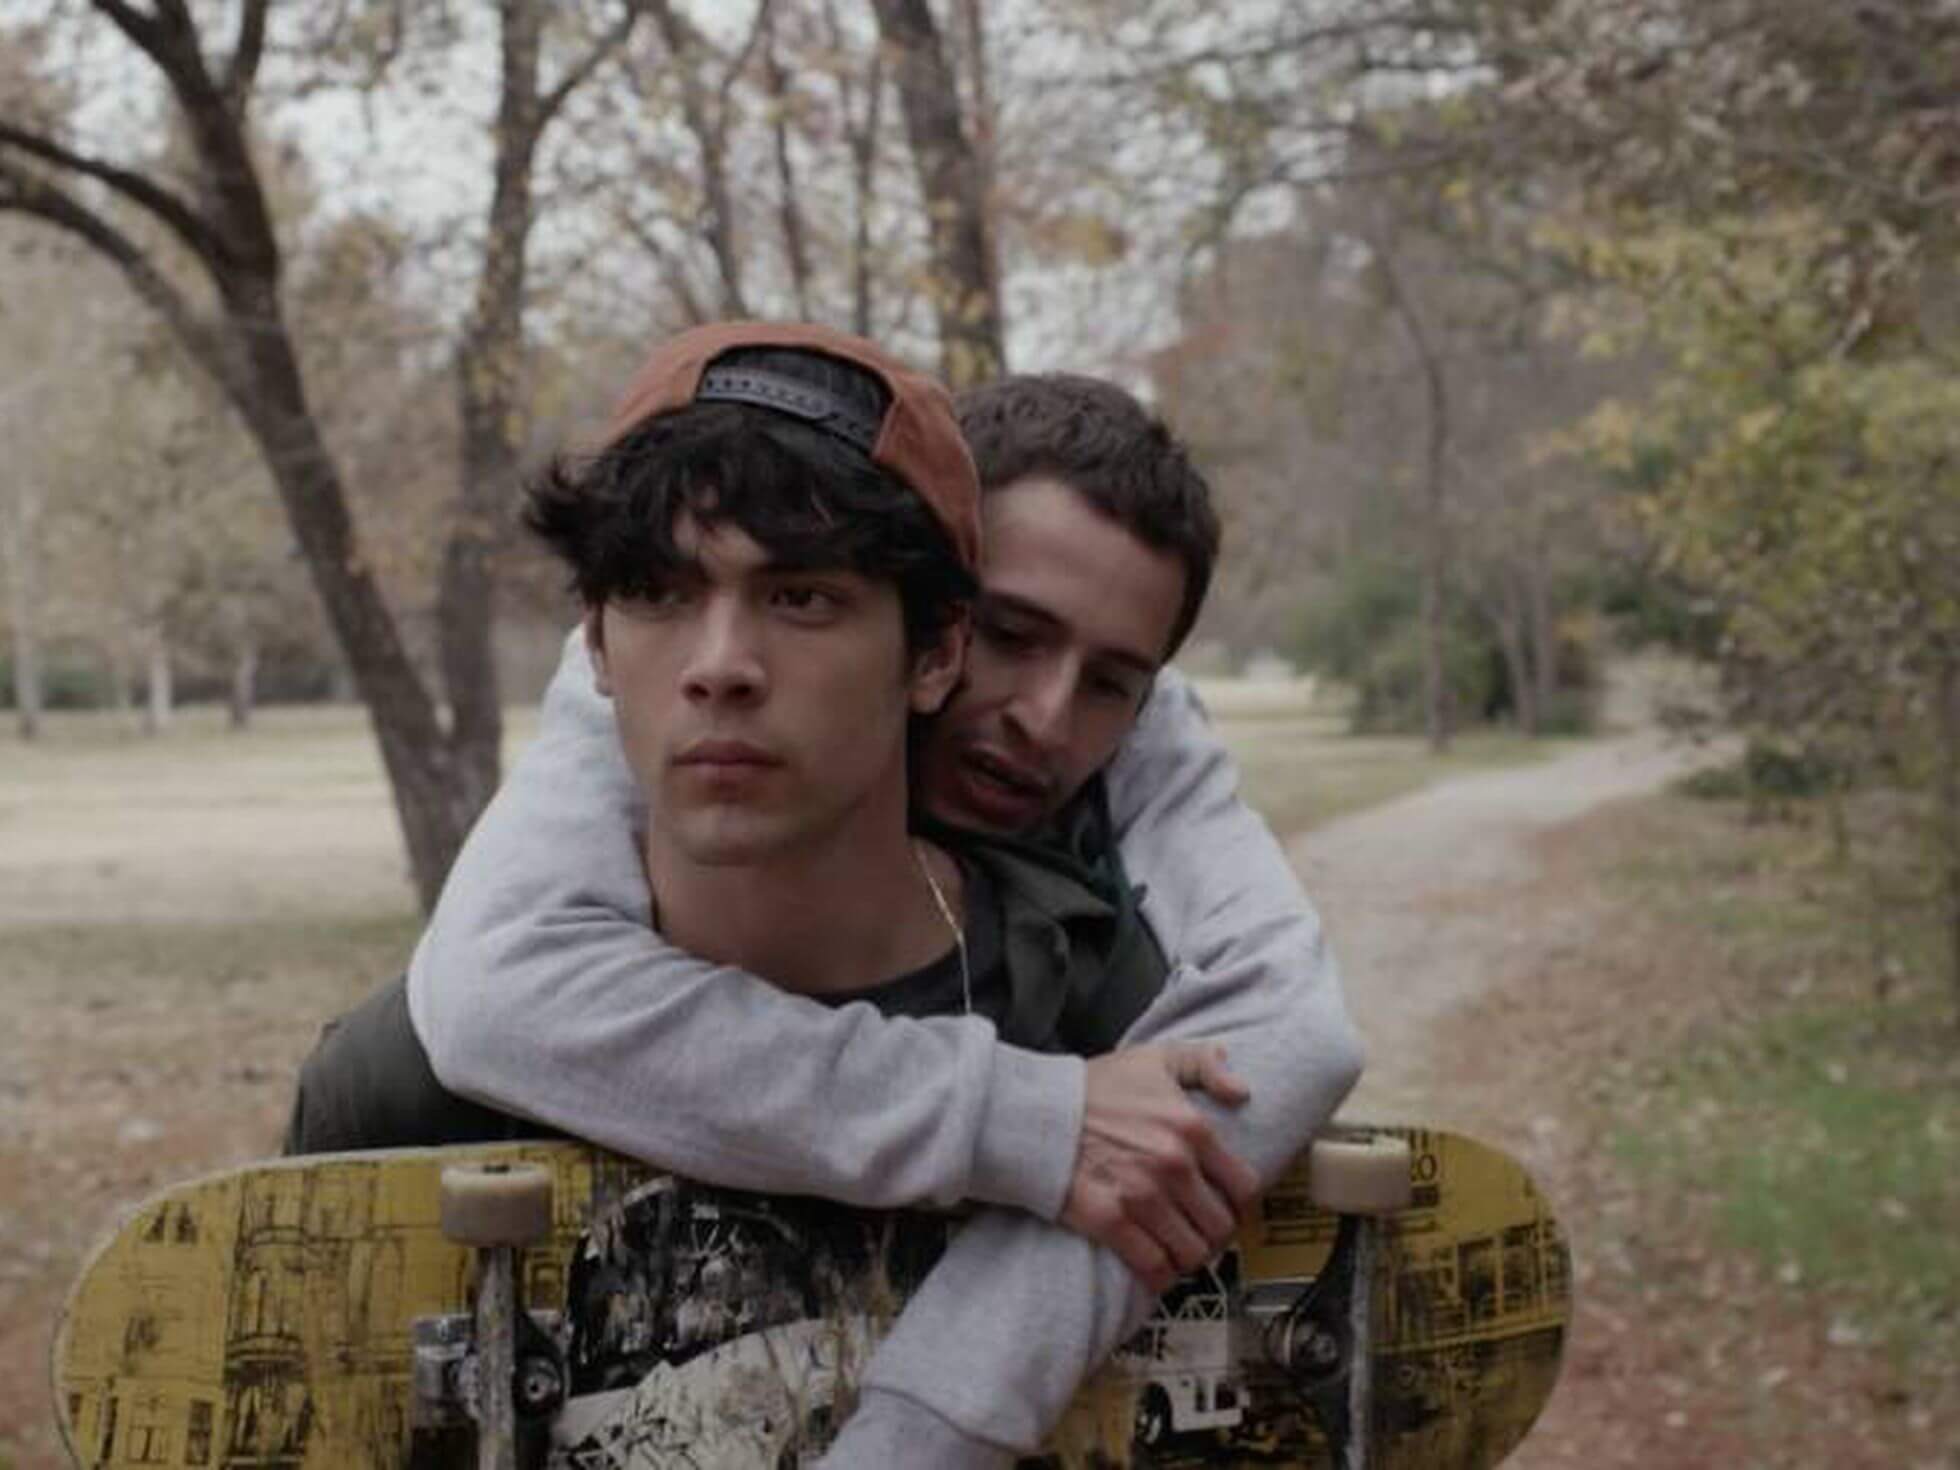 Este ciclo de cine pretende llevar una mirada distinta a las realidades de las juventudes en el contexto mexicano